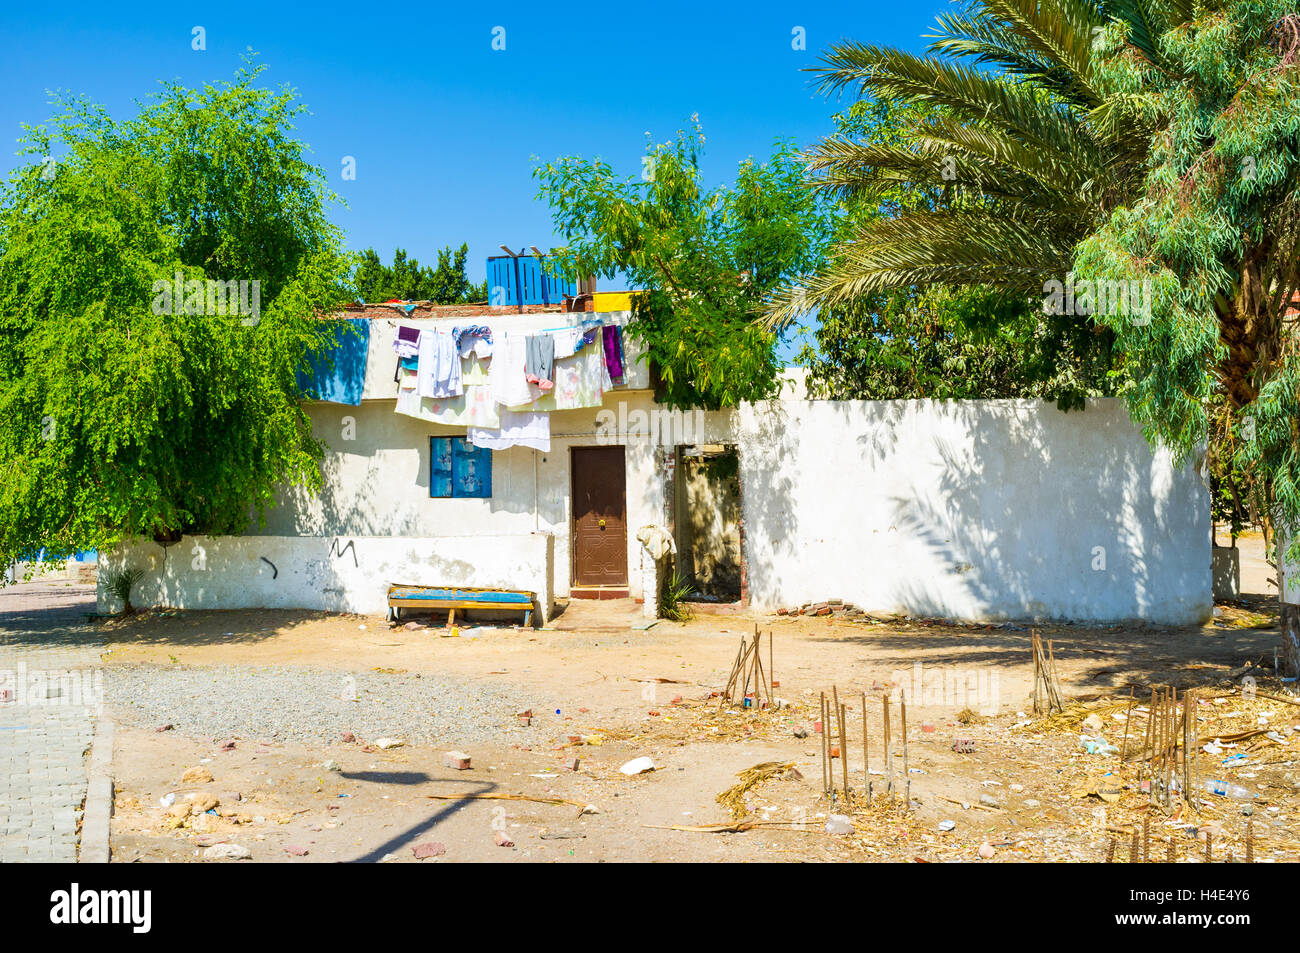 Das Kleine Weisse Haus Mit Dem Trocknen Von Kleidung Auf Dem Hof Hurghada Agypten Stockfotografie Alamy